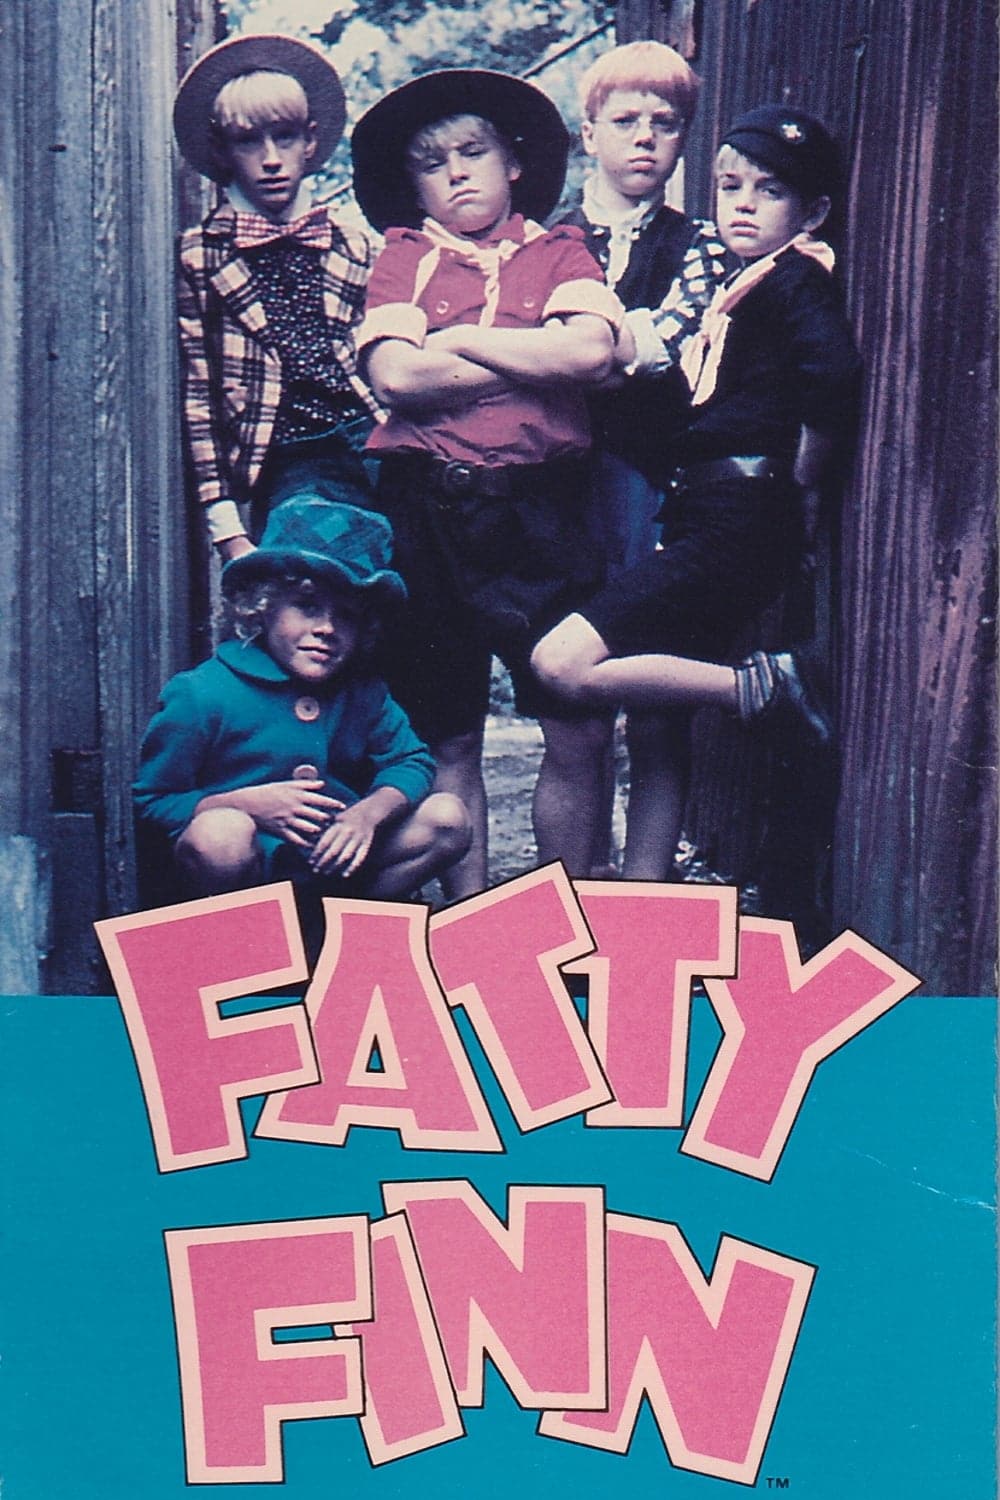 Plakat von "Fatty Finn"